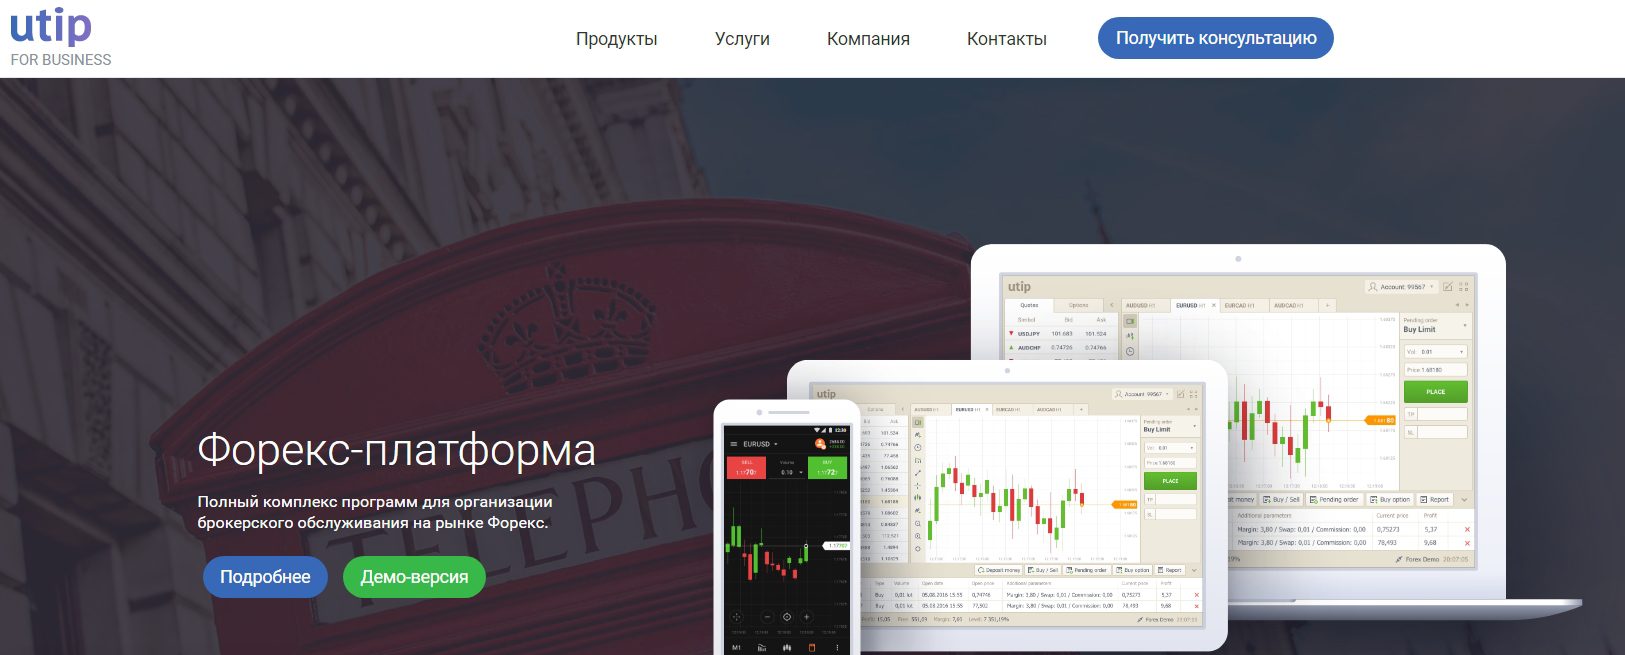 Сайт компании UTIP Trader